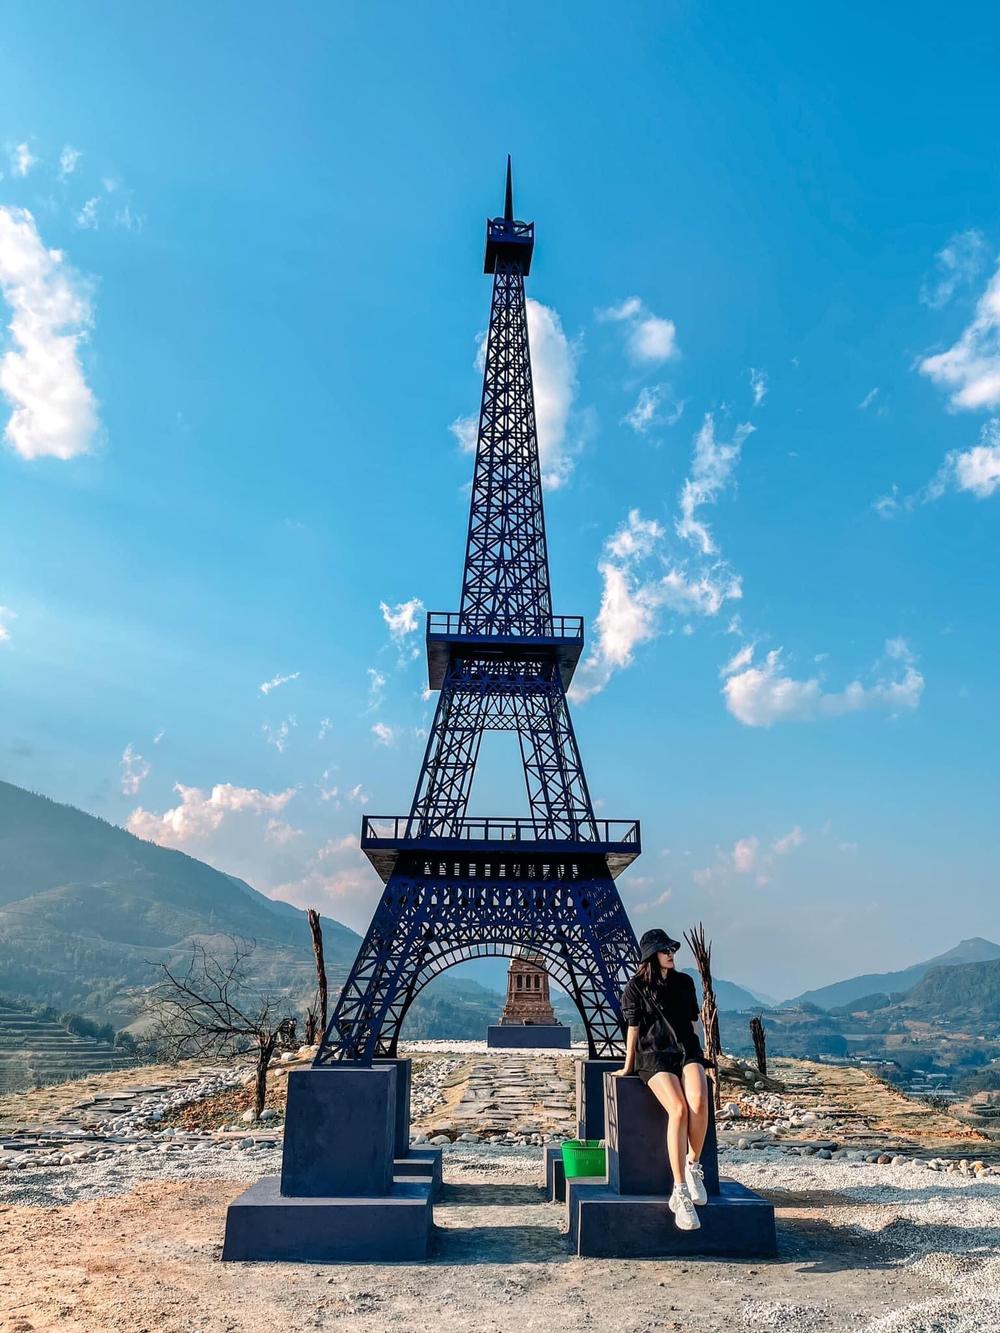  
Hình ảnh check in lung linh cùng tháp Eiffel "phake" tại Sa Pa. (Ảnh: FB R.V.S.P)